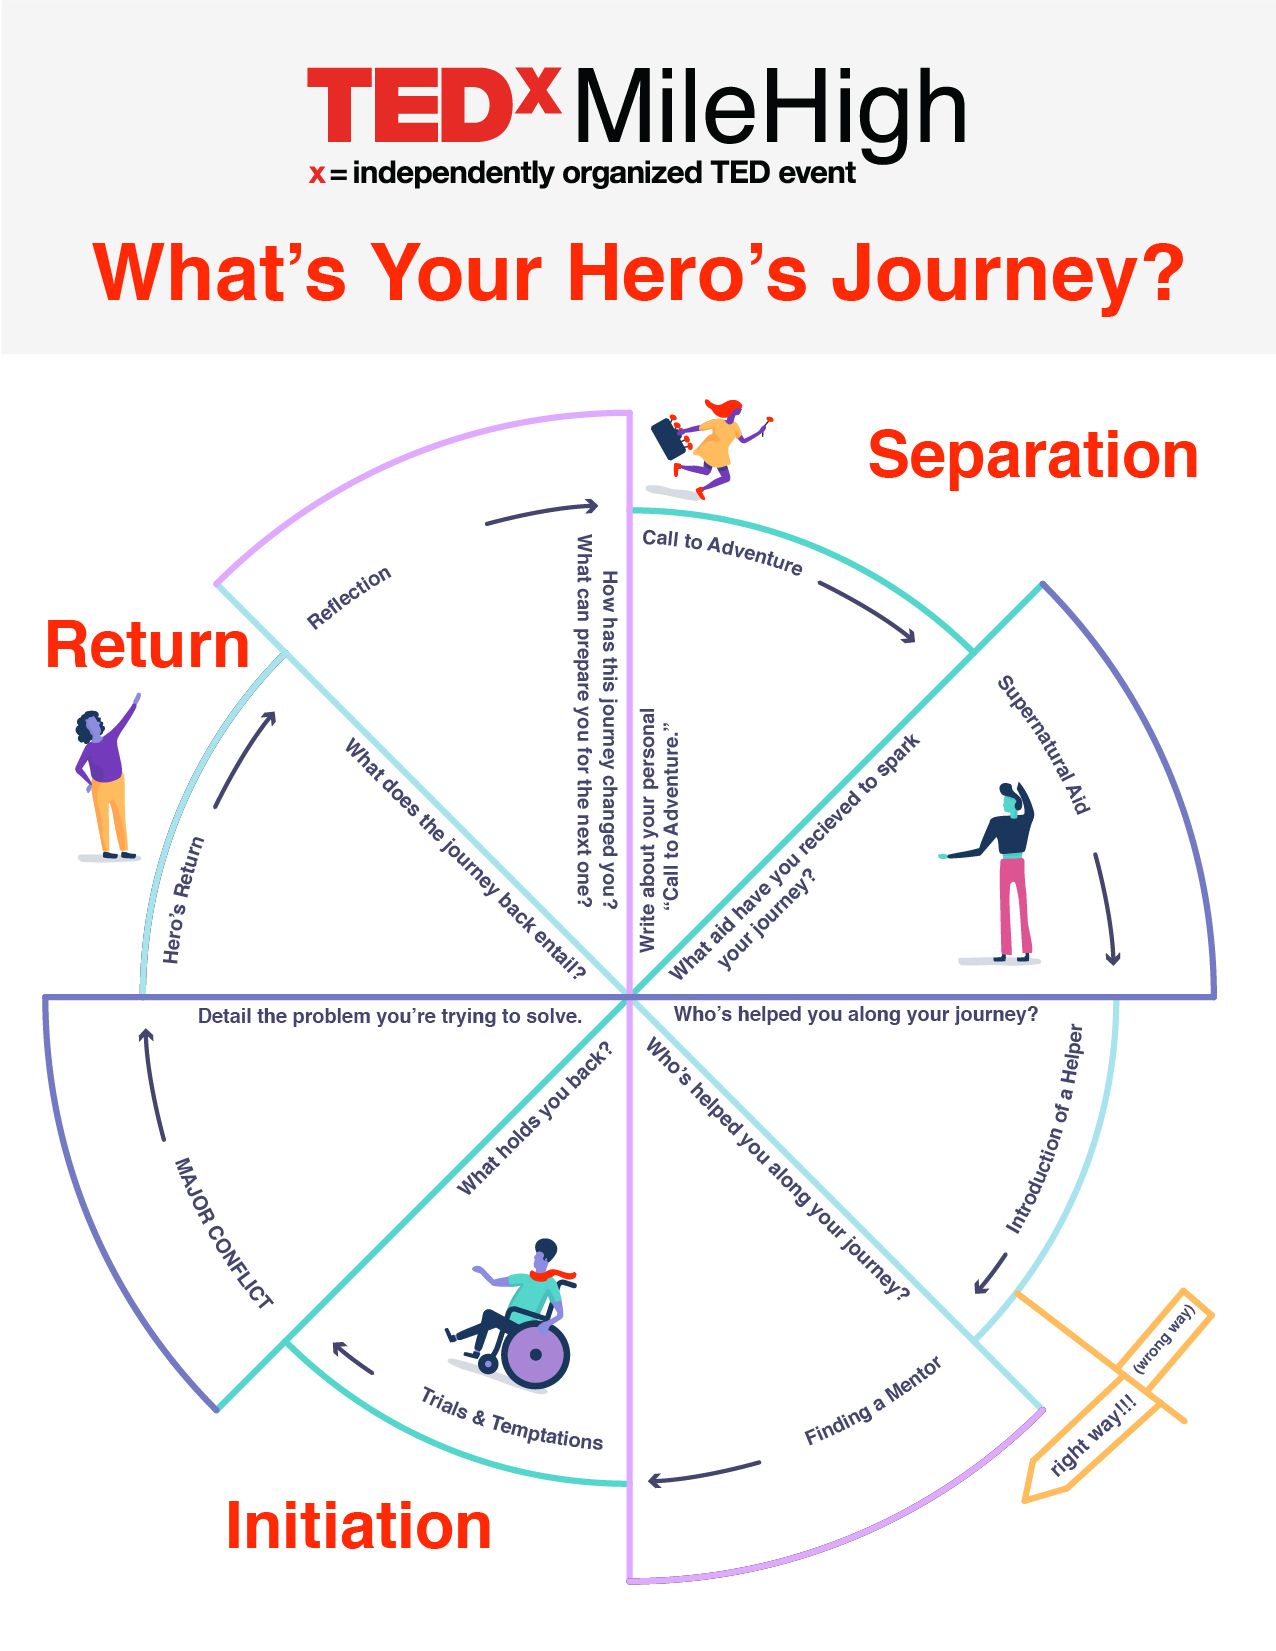 The Hero's Journey Archetype Cycle: TEDxMileHigh